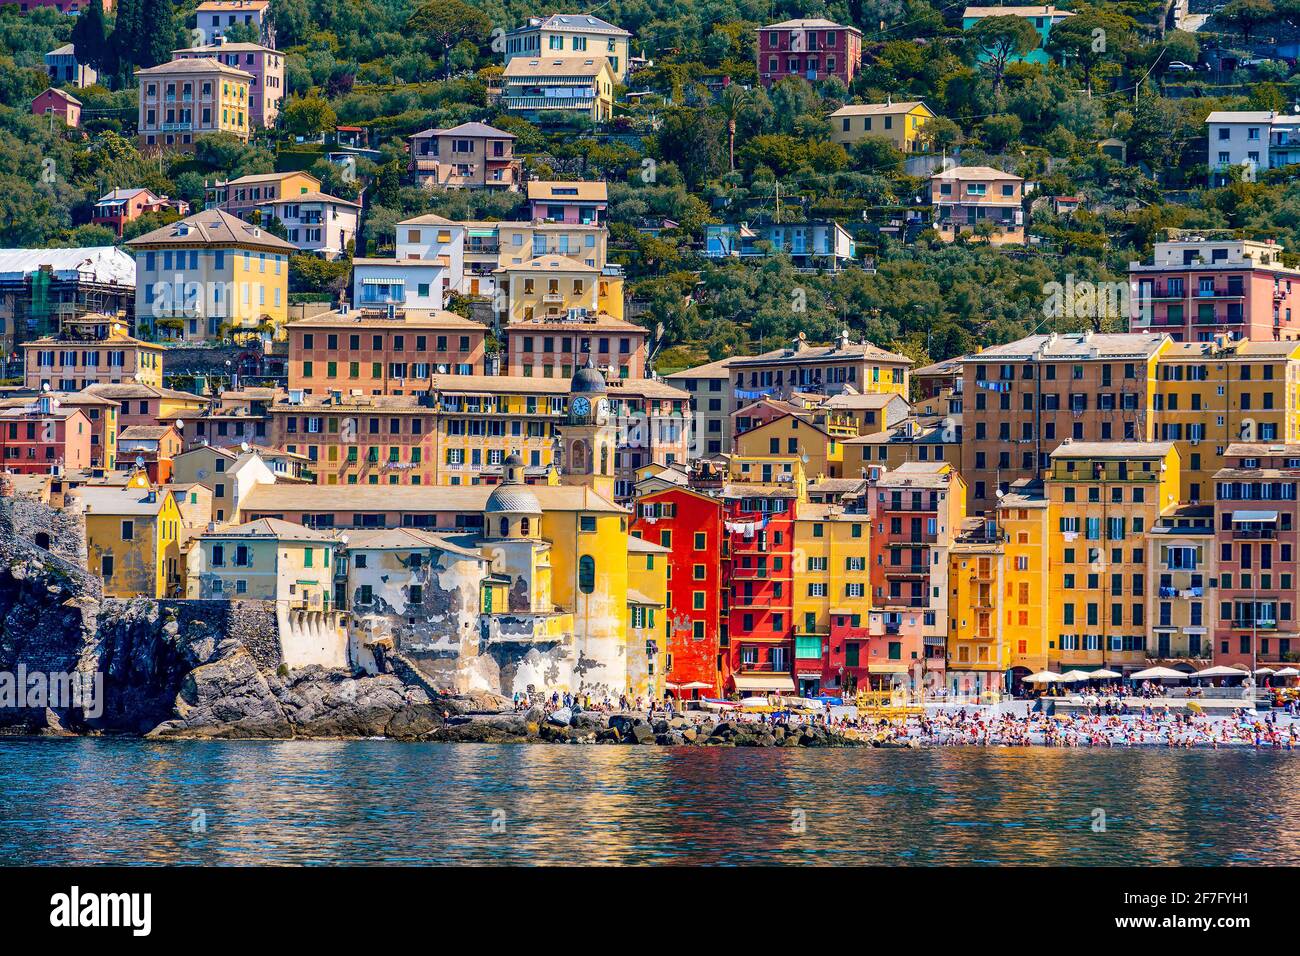 Vue sur le pittoresque village coloré de Camogli en Ligurie sur l'italien Riviera aux palais peints orange et jaune vif Banque D'Images